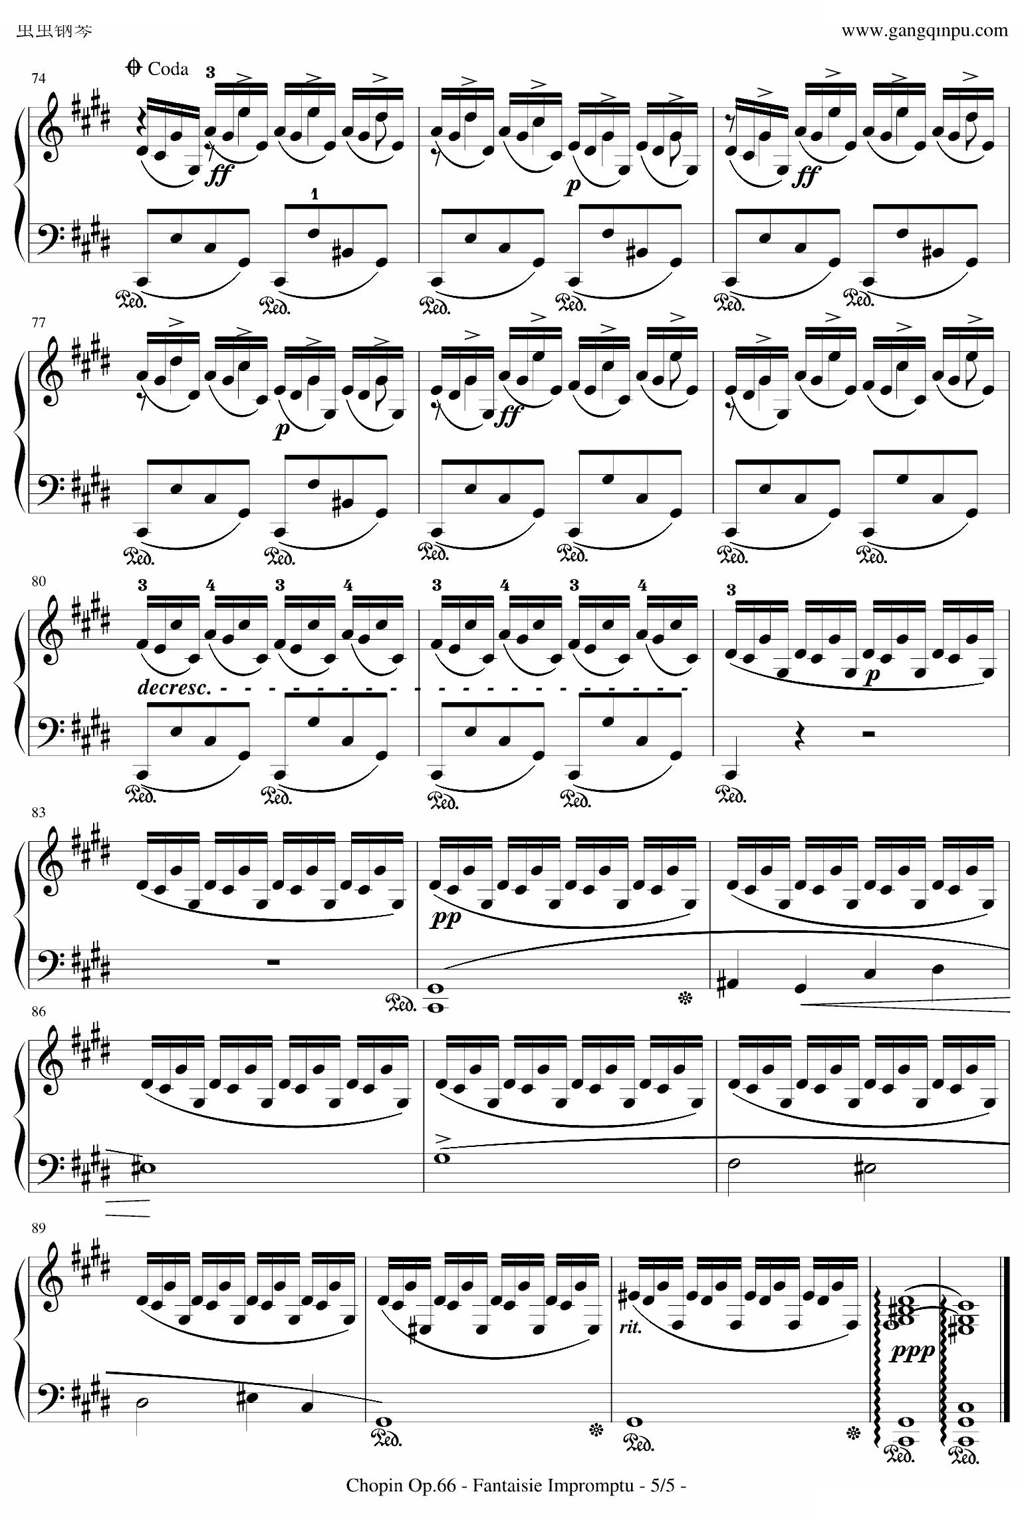 即兴幻想曲-带指法-Op.66